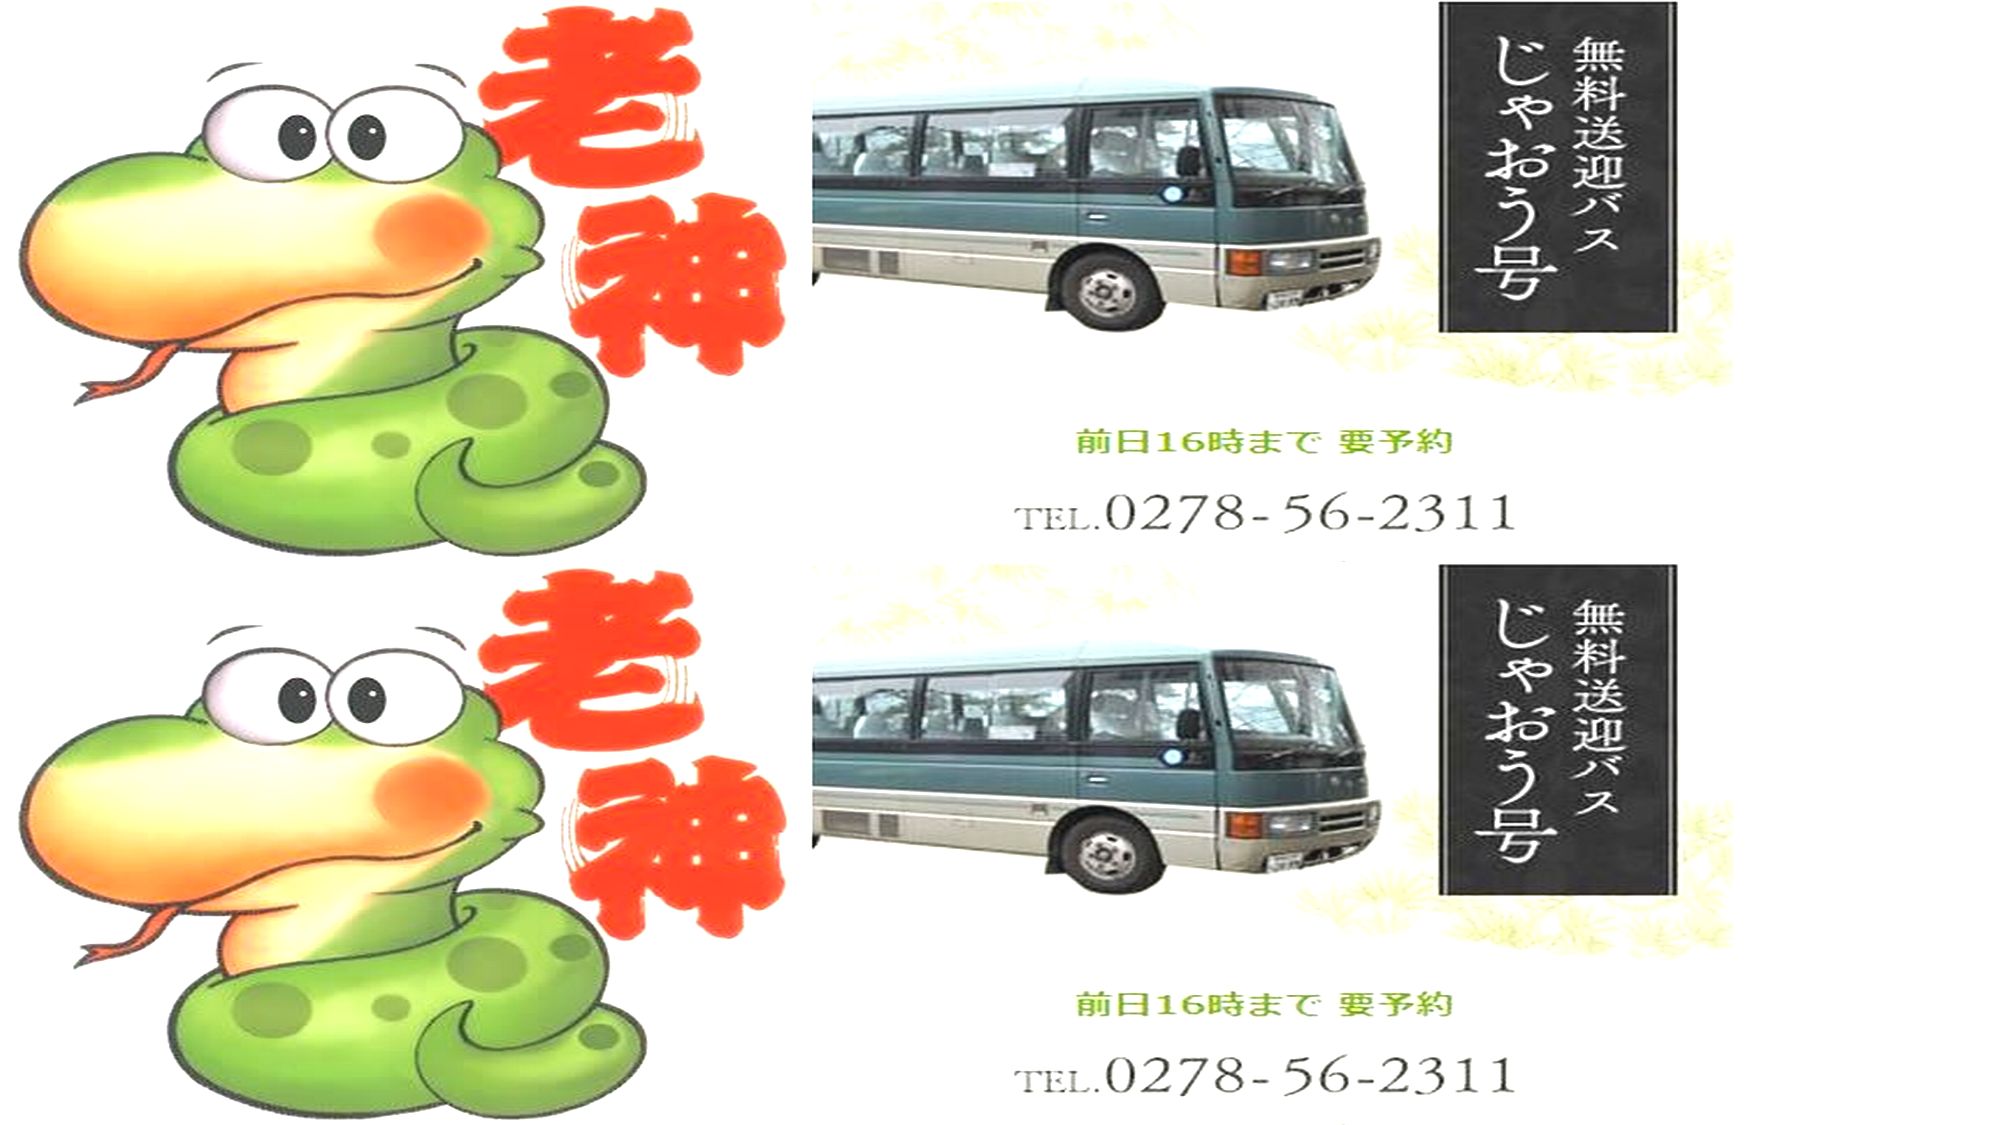 ■駅から送迎バス【じゃおう号】